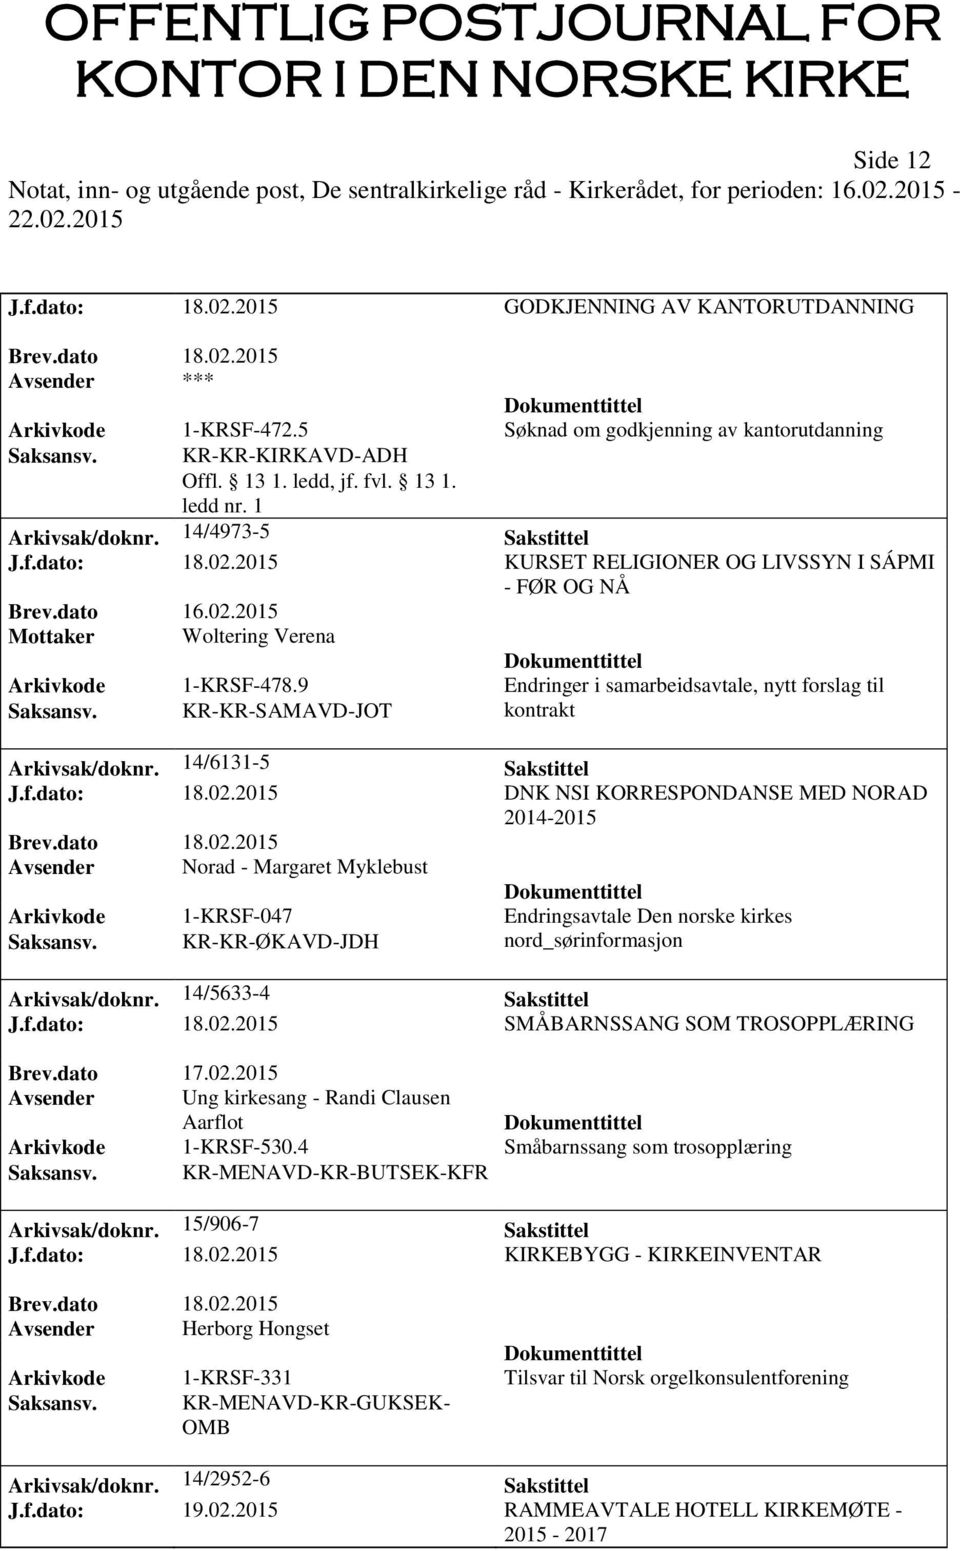 9 Endringer i samarbeidsavtale, nytt forslag til Saksansv. KR-KR-SAMAVD-JOT kontrakt Arkivsak/doknr. 14/6131-5 Sakstittel J.f.dato: 18.02.